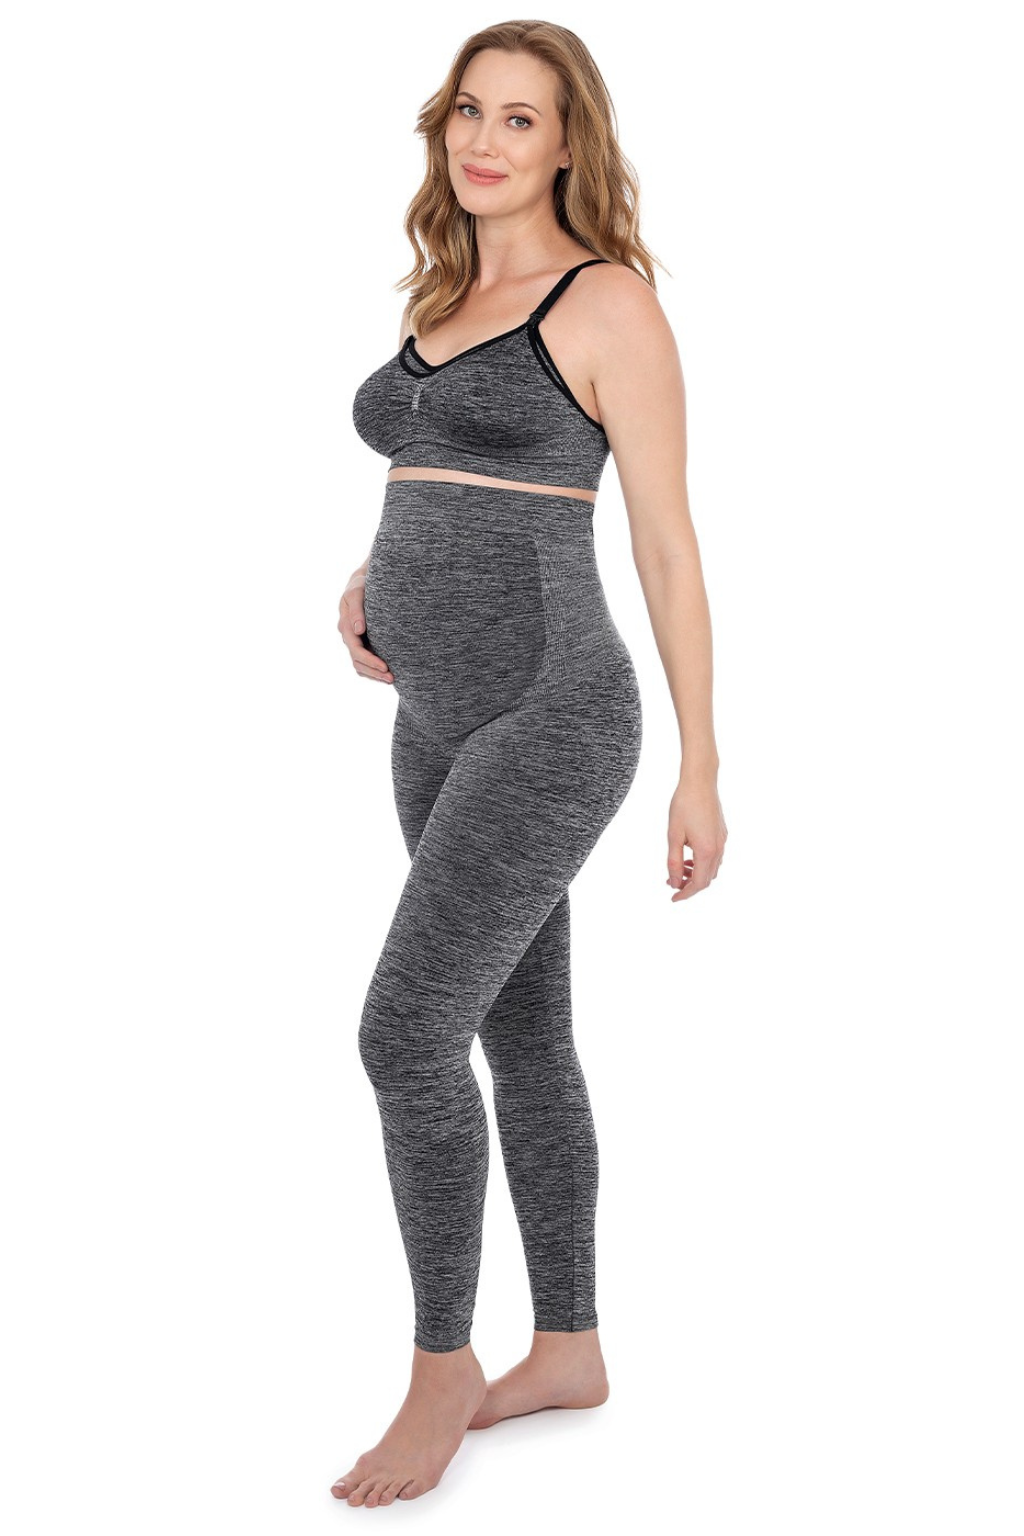 Plie Duomix Pregnant maternity Legging مشد حمل للحامل برازيلي اصلي بنطال حمل ملابس حمل